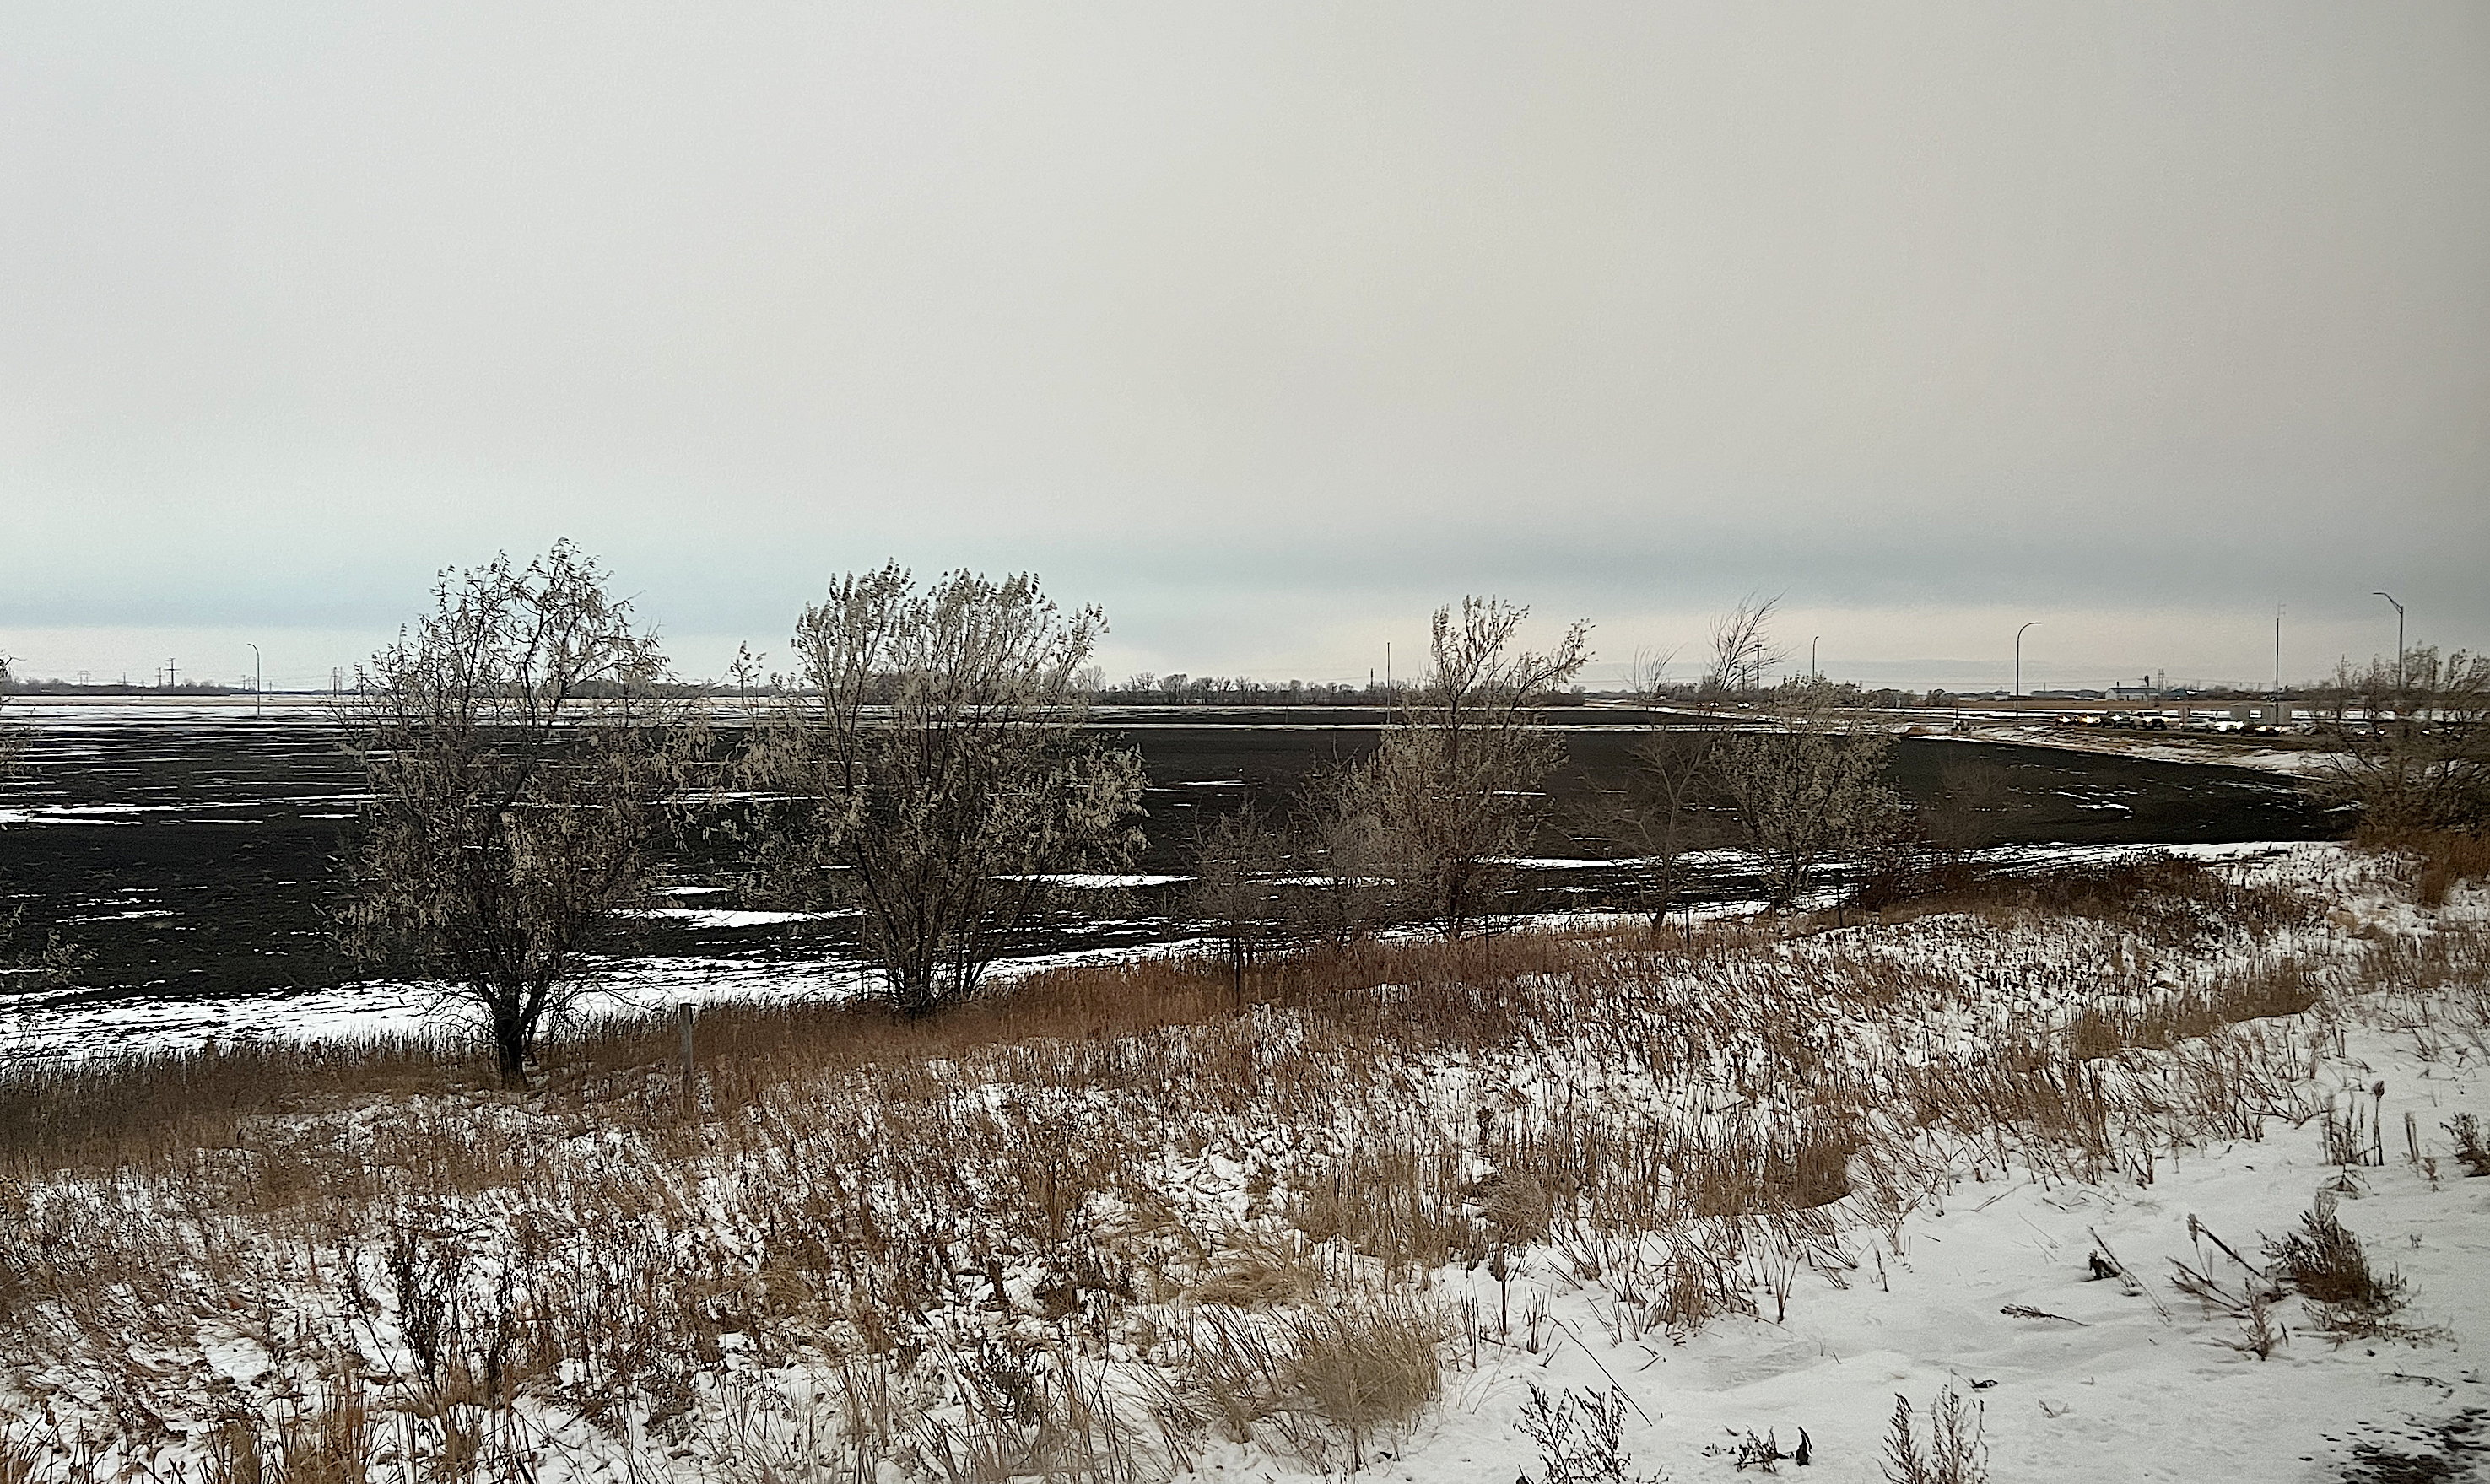 Bei Tagesbeginn, bzw. als es langsam heller wurde. Bei Grand Forks, North Dakota, schneebedeckte Wiese, dahinter recken Bäume ihre dürren Äste in den grauen, kalten Winterhimmel.